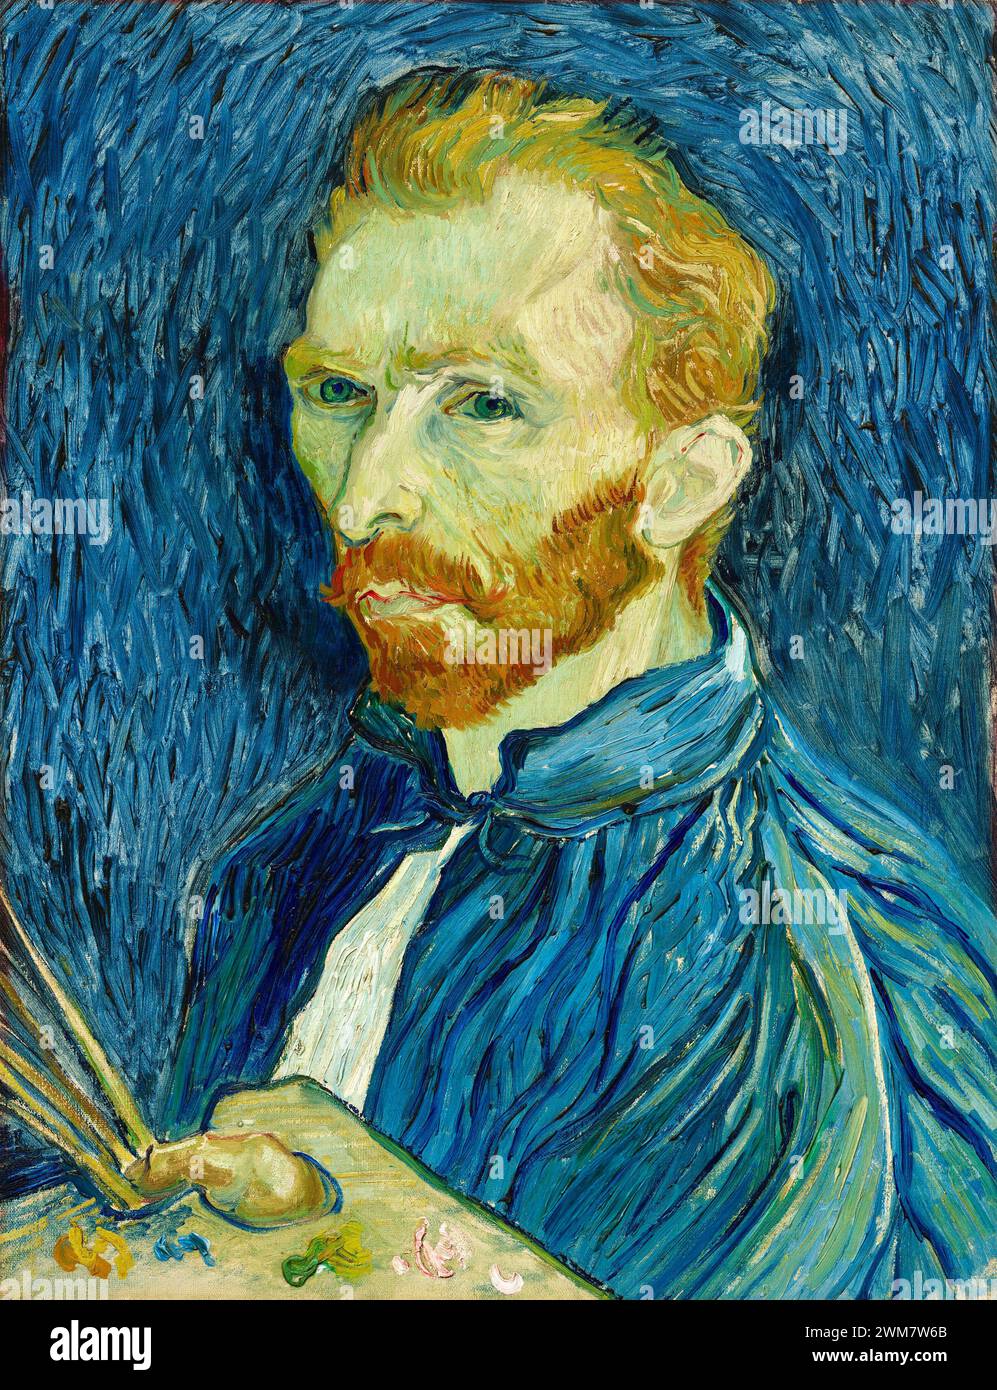 Self-Portrait. Vincent van Gogh. 1889. Stock Photo